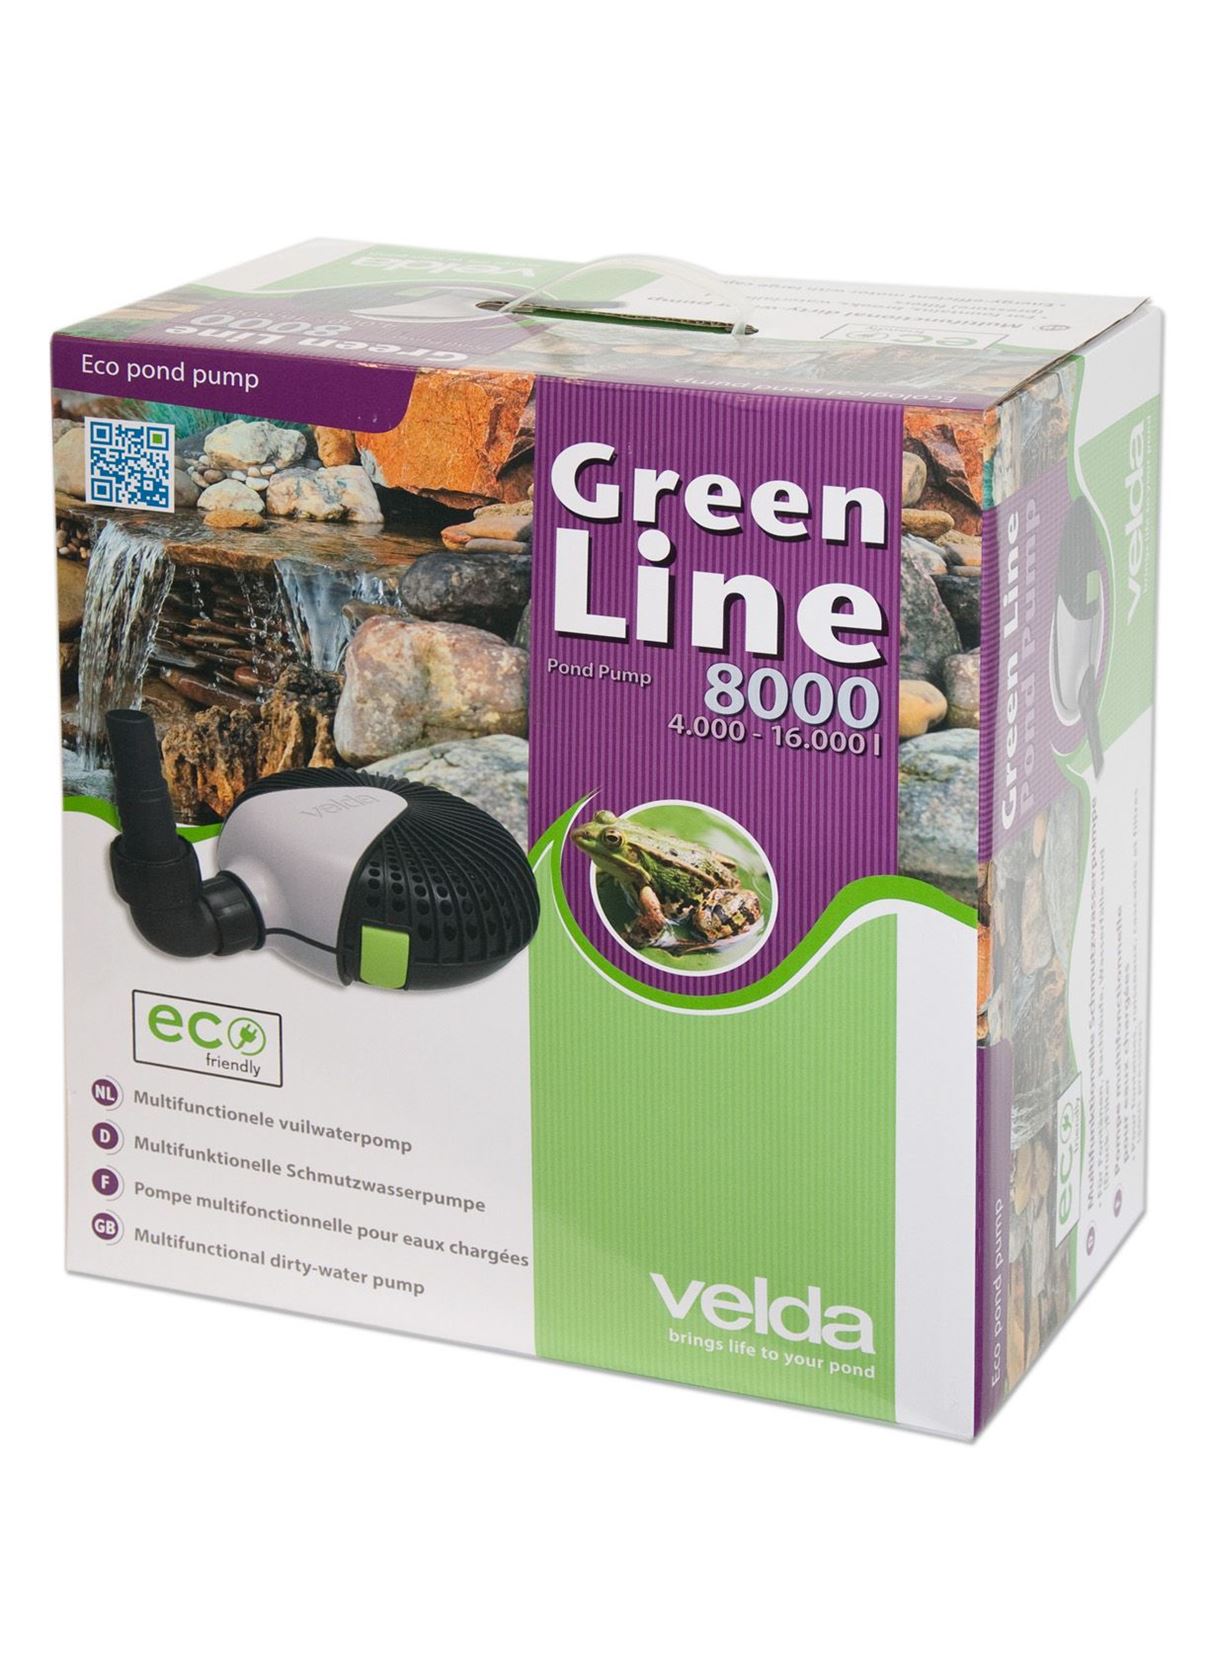 Green-Line-8000-energiezuinige-vijverpomp